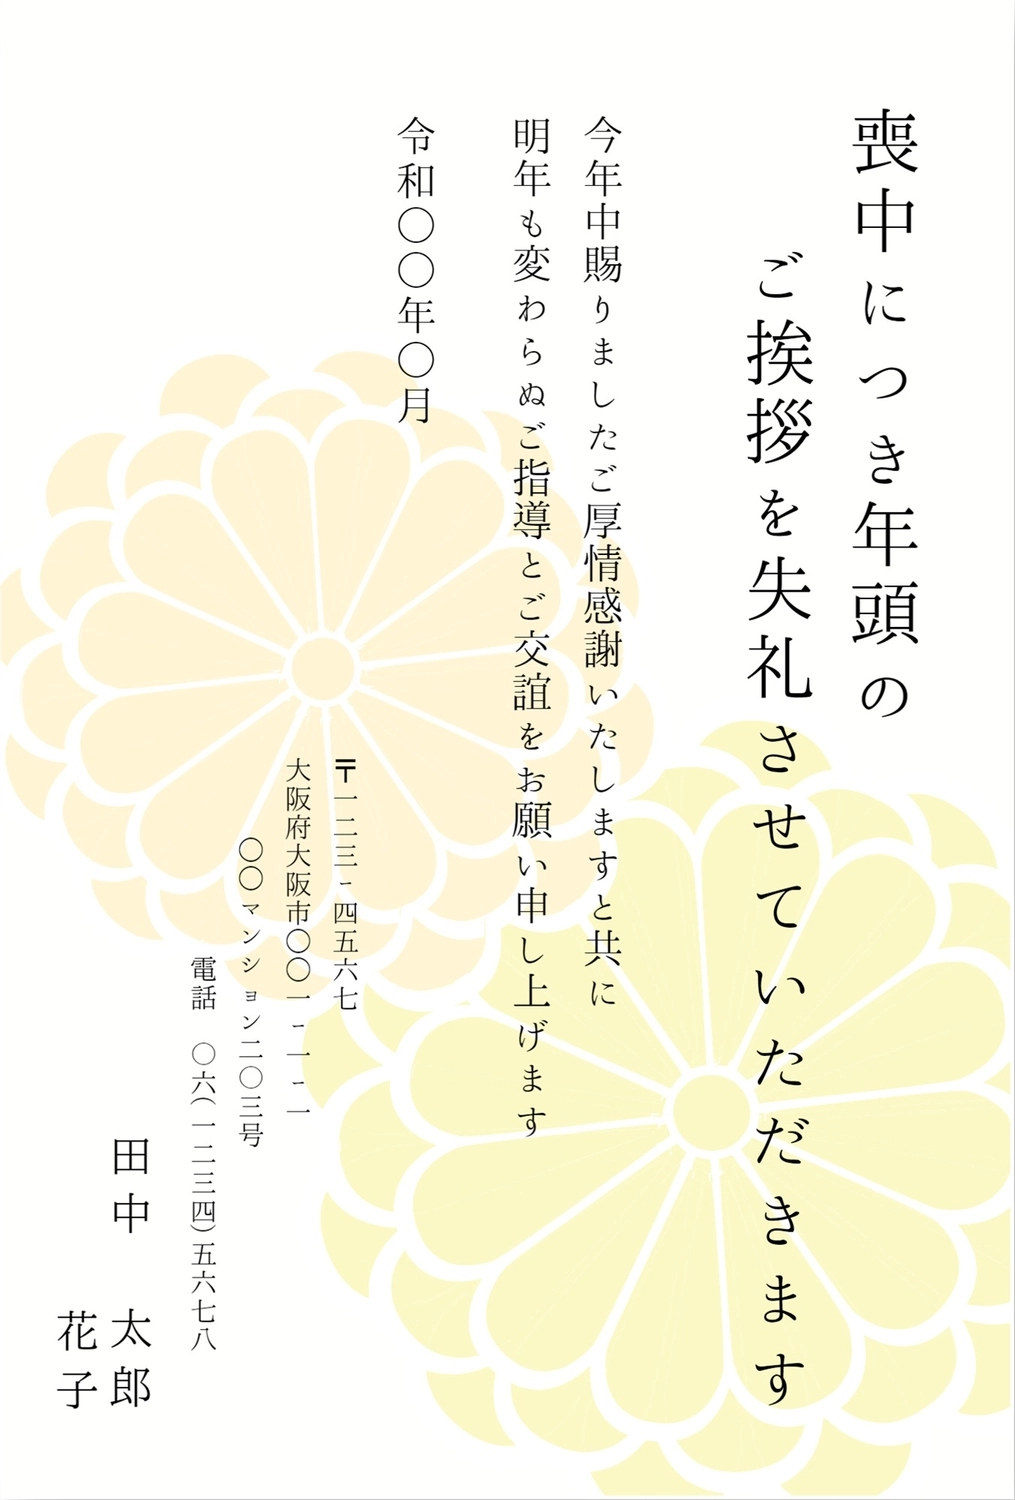 喪中はがき大きな菊の花, Couple joint name, flower, pattern, Mourning Postcard template